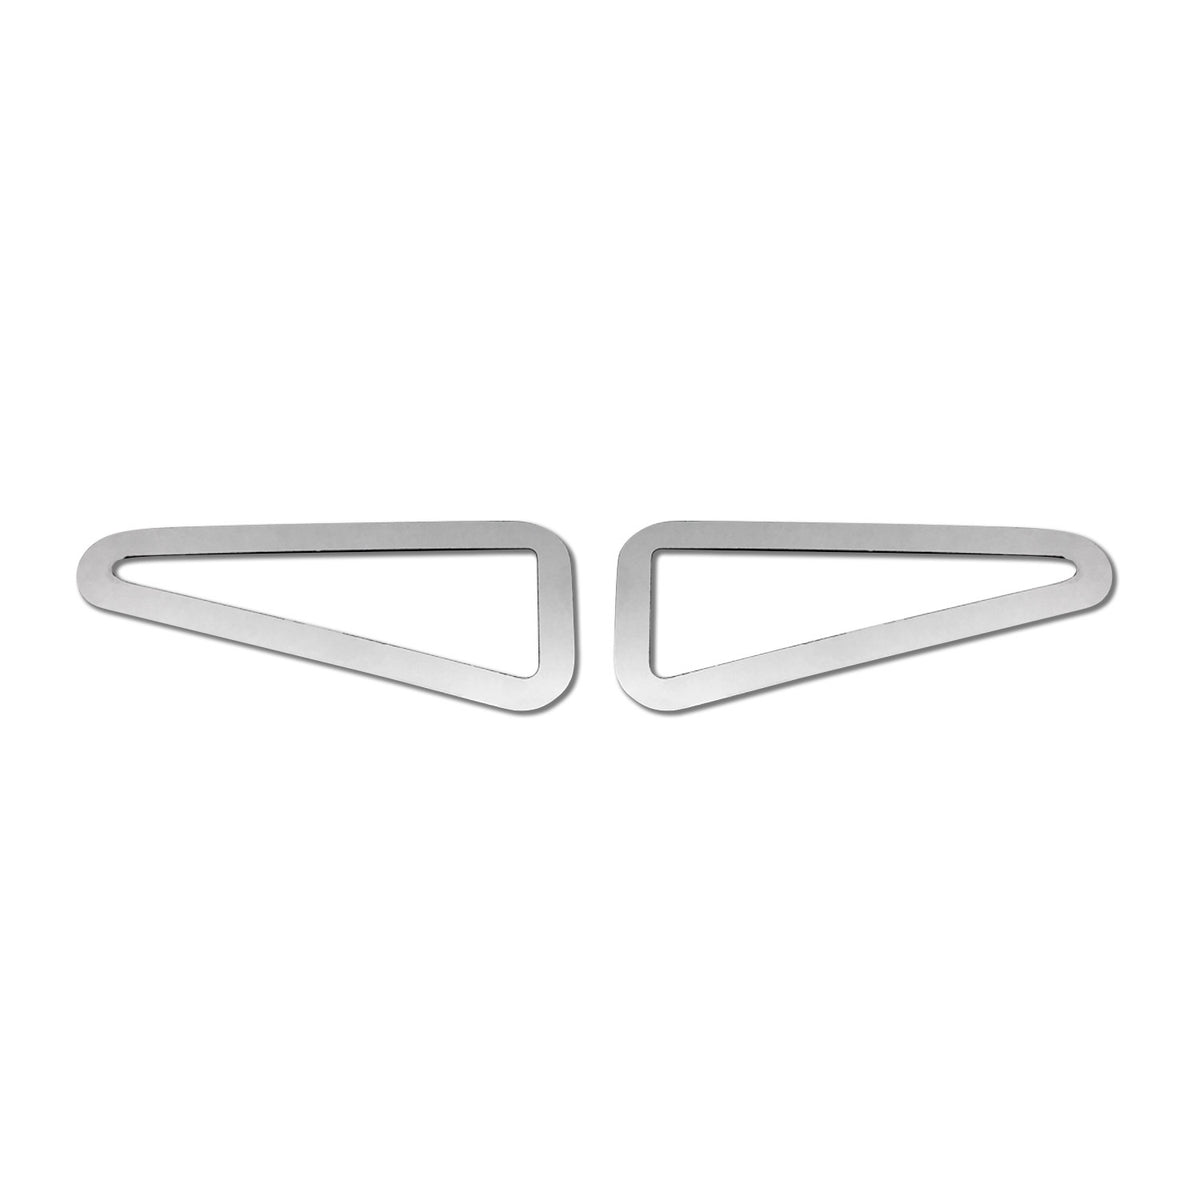 Blinkerrahmen Signalblende Blinker für Renault Megane 2002-2008 Edelstahl Silber